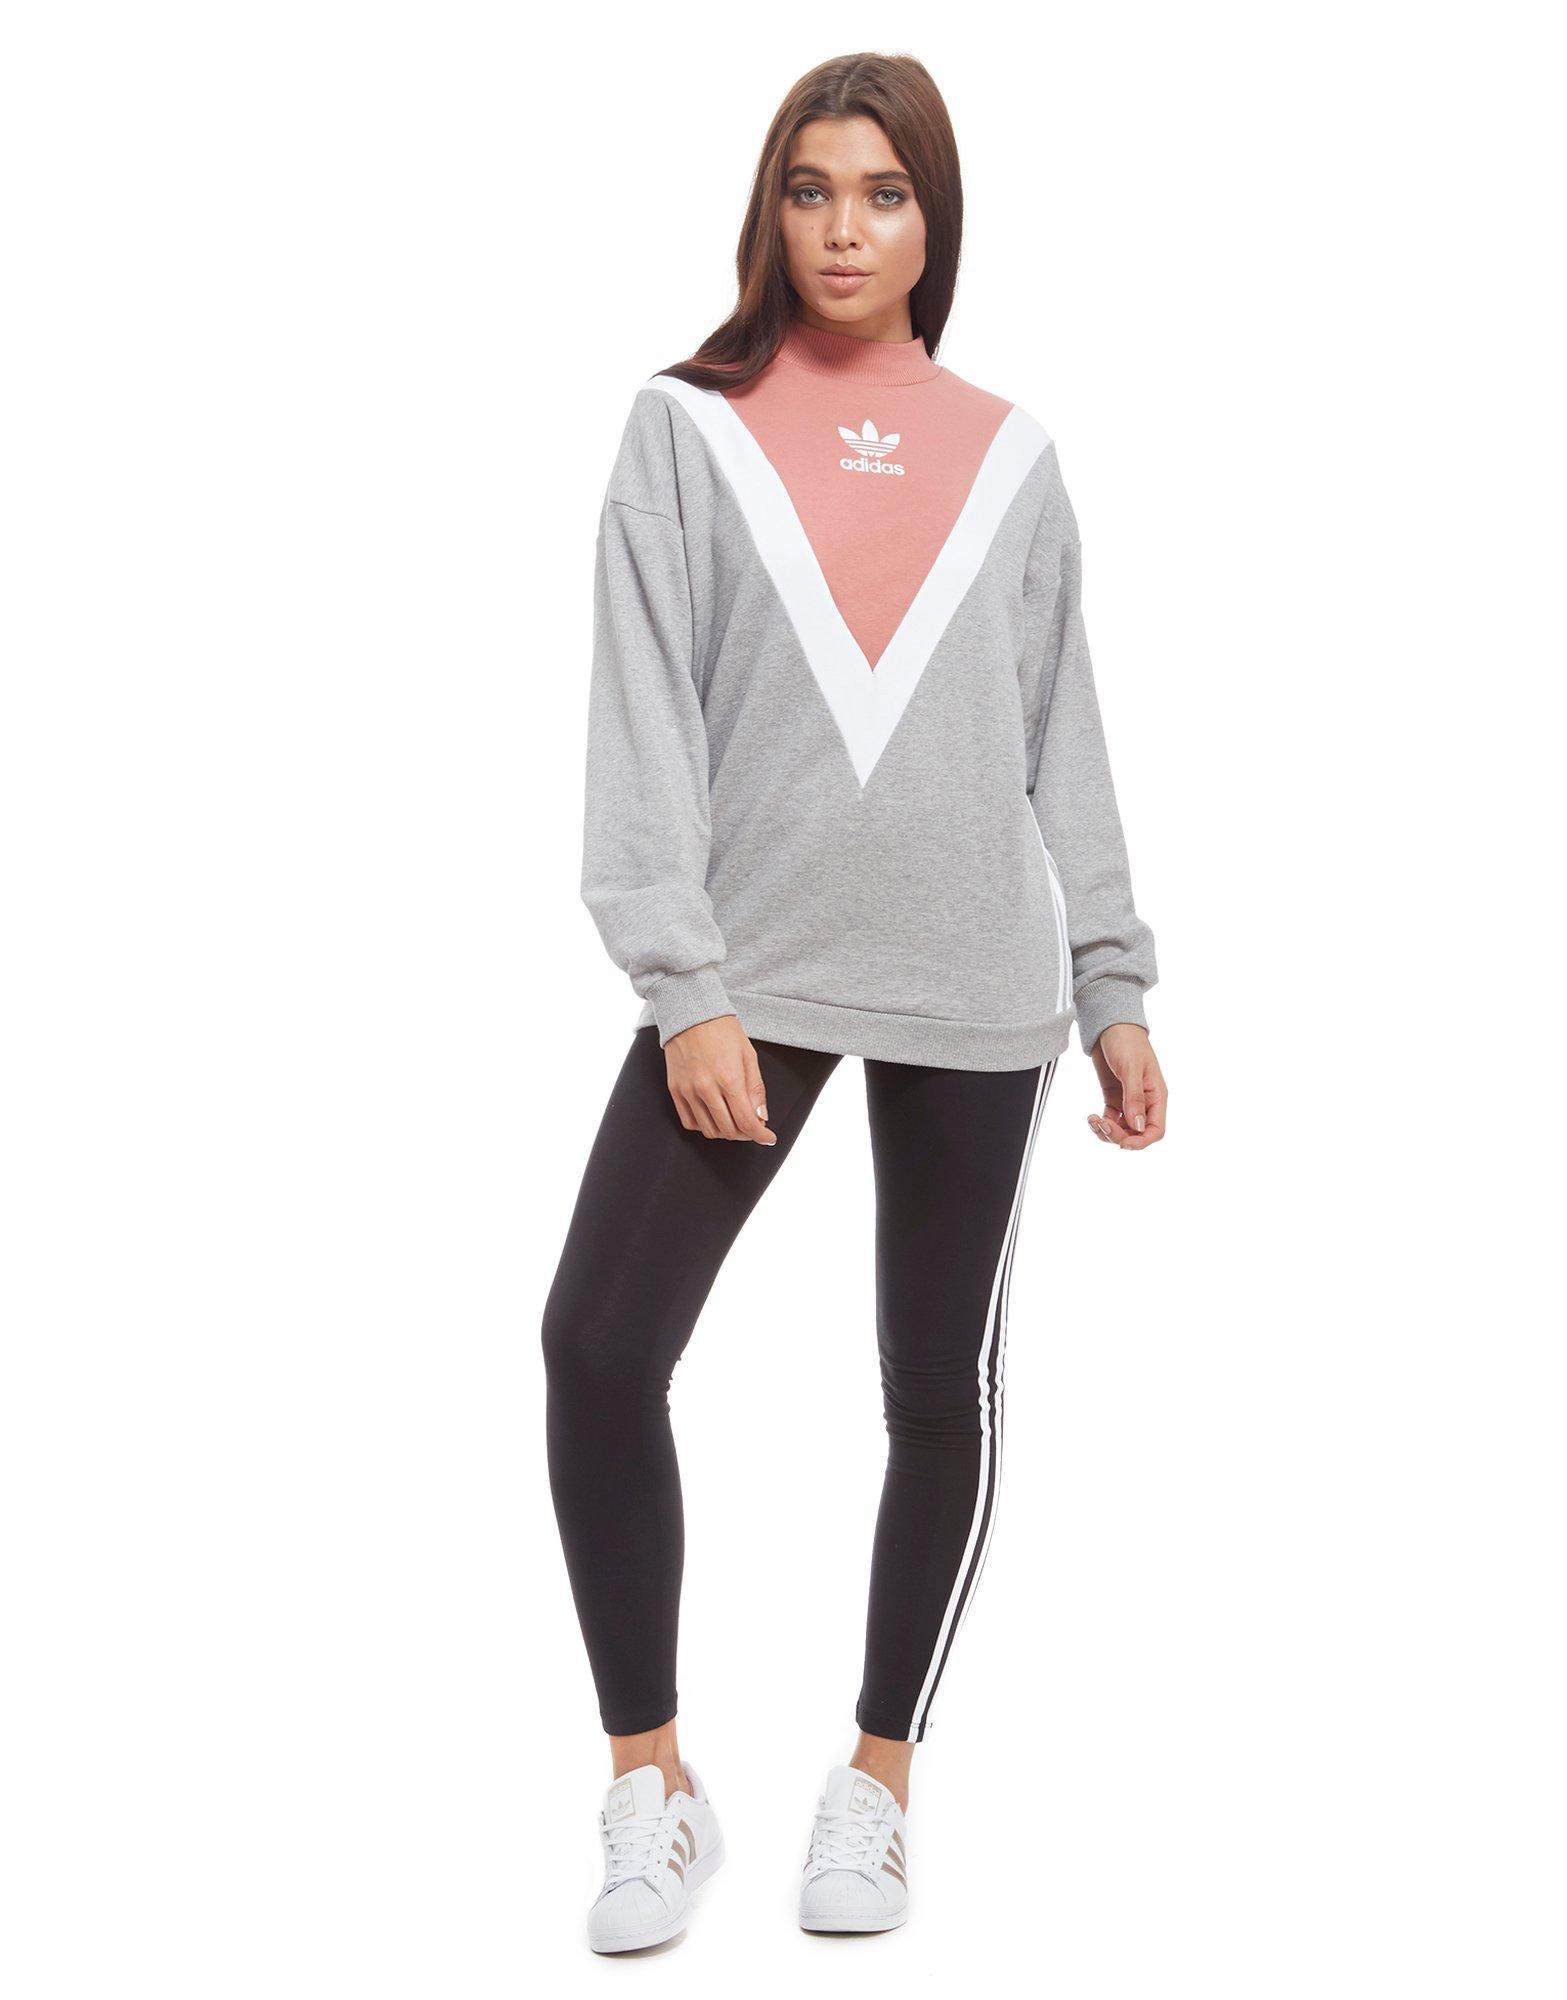 grey and pink adidas jumper